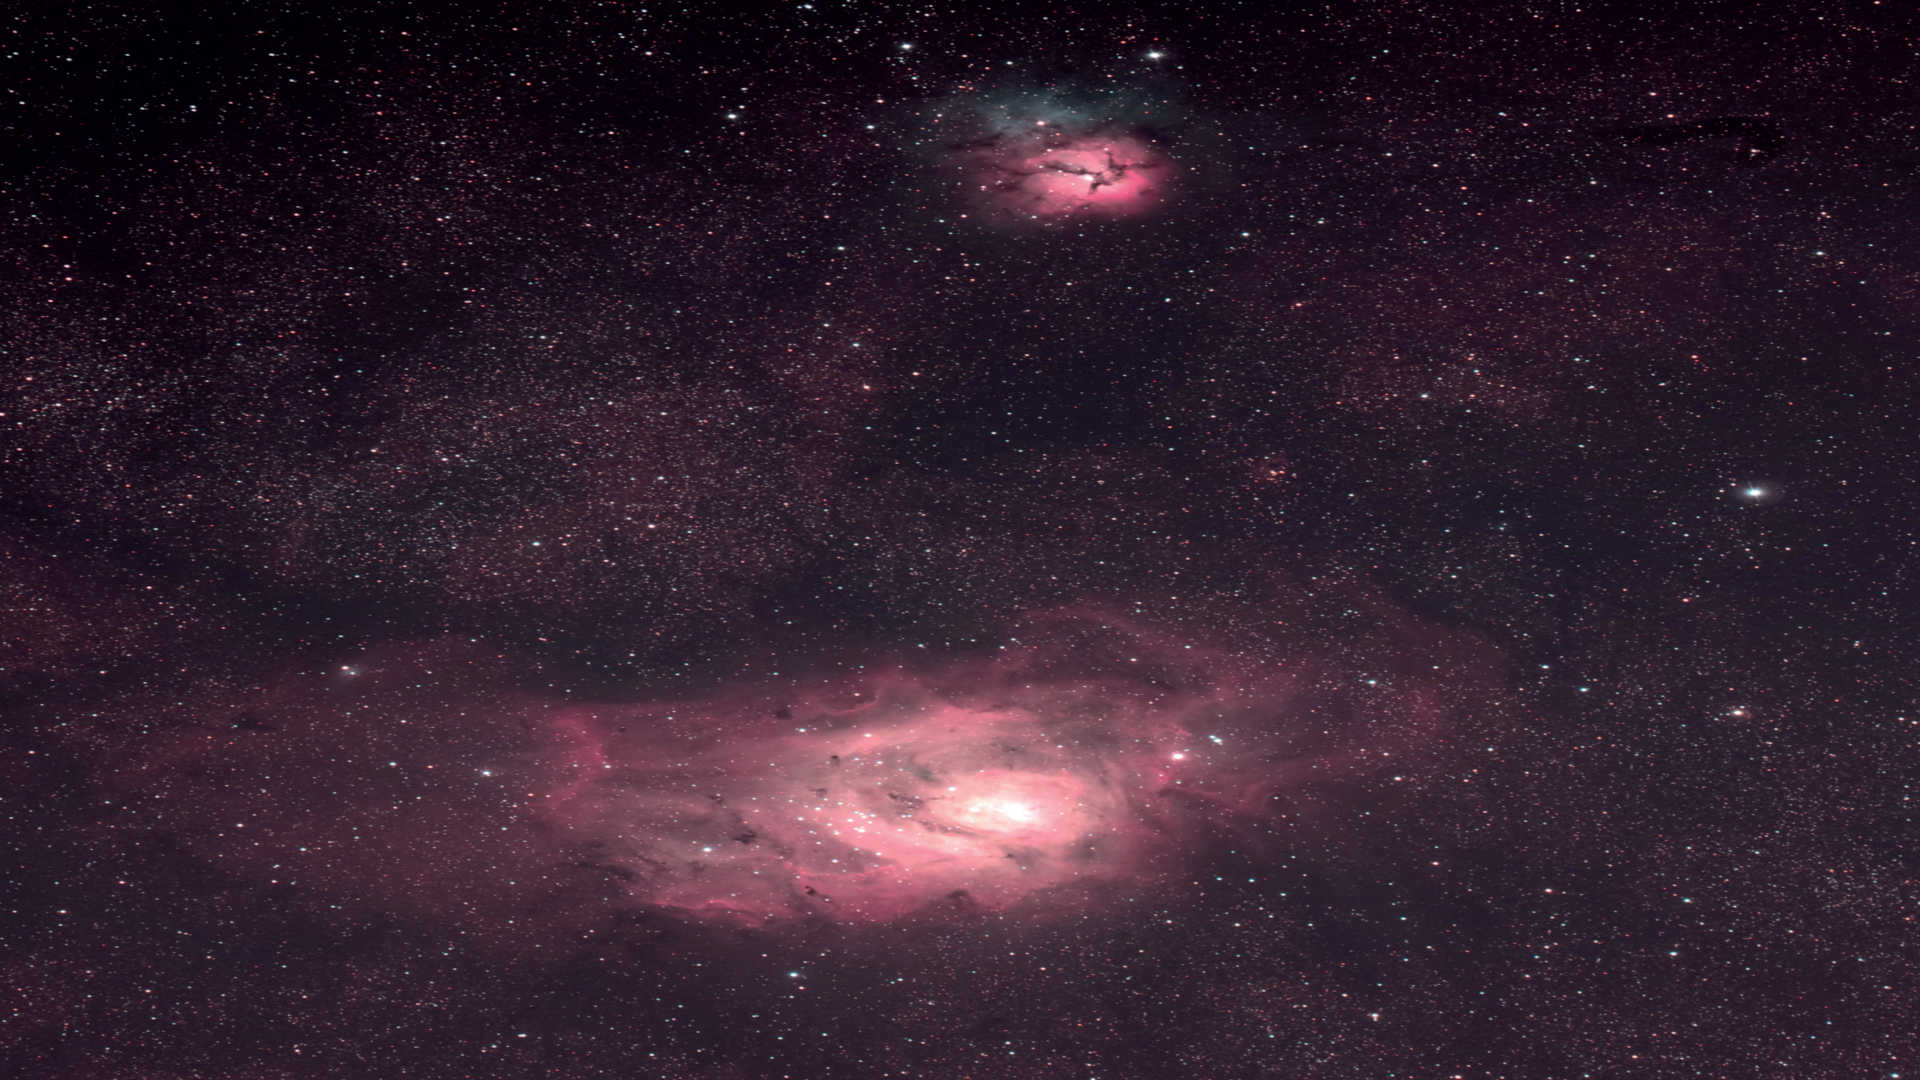 La nébuleuse de la Lagune (Messier 8) avec la nébuleuse Trifide (Messier 20). La photo a été prise avec un astrographe sur une monture équatoriale. L’empilement d’images est composé de huit photos prises à un temps d’exposition de 450 secondes chacune.